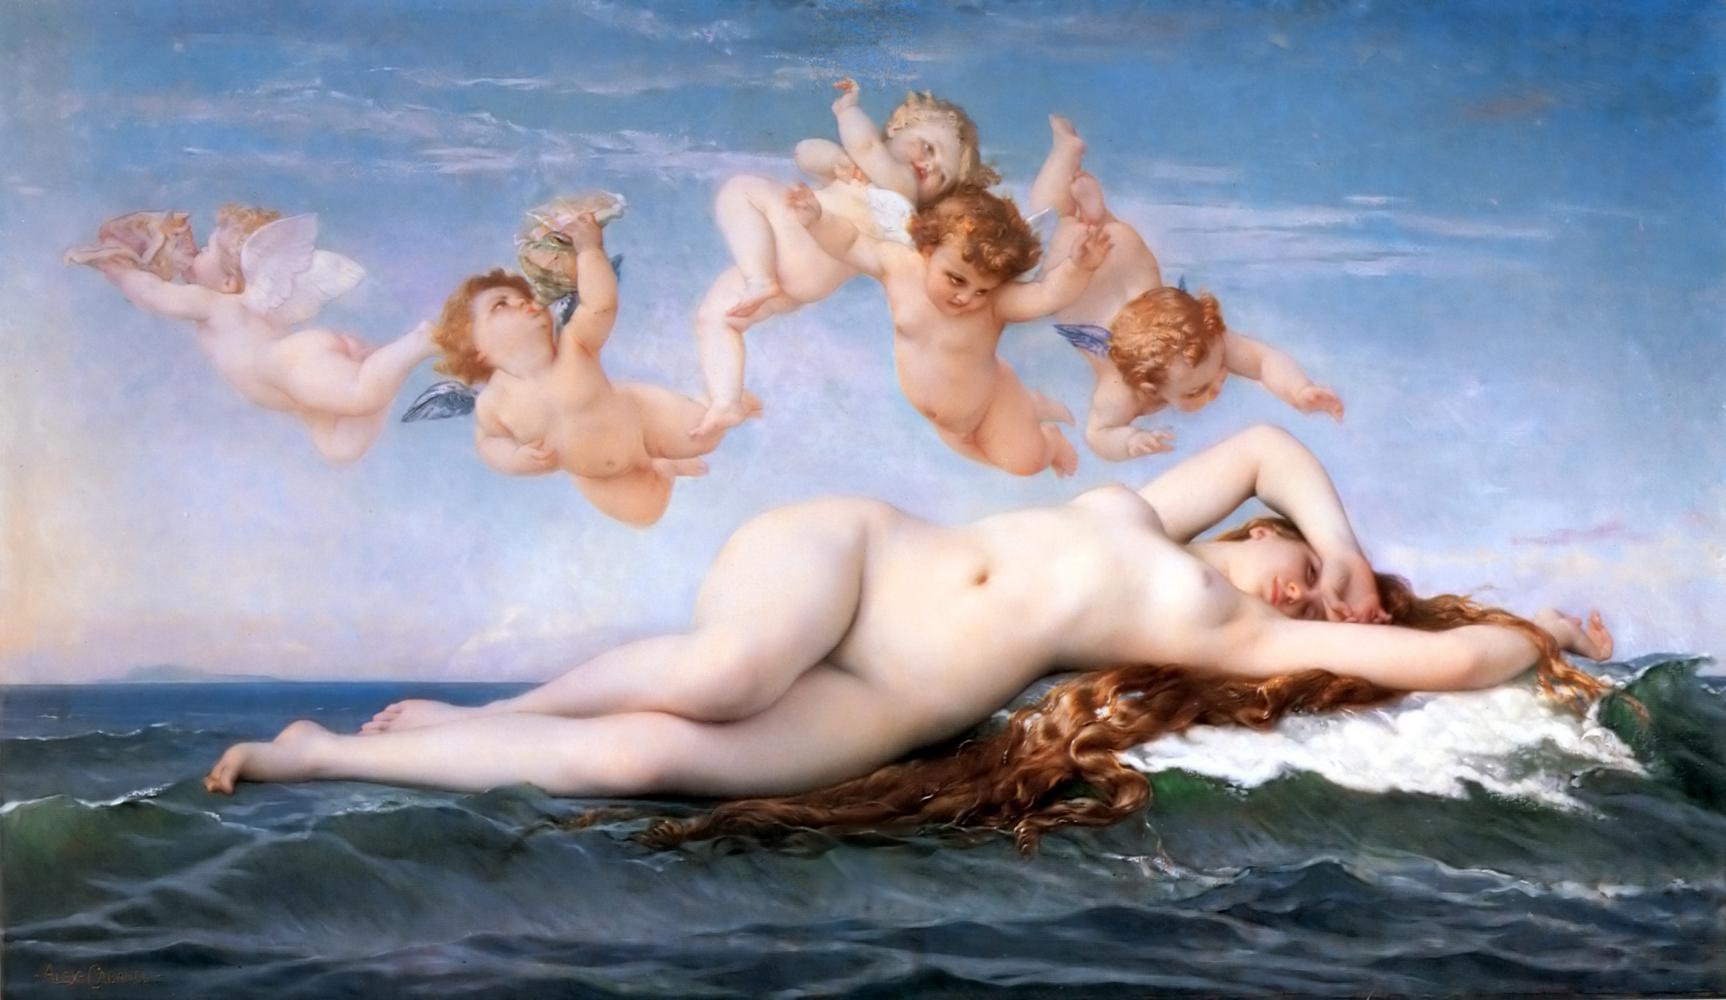 Ideale Weiblichkeit in der Kunst hieß lange untenrum glatt und unaufdringlich, und gemalt wurde sie überwiegend von Männern: Hier die "Geburt der Venus" von Alexandre Cabanel von 1863